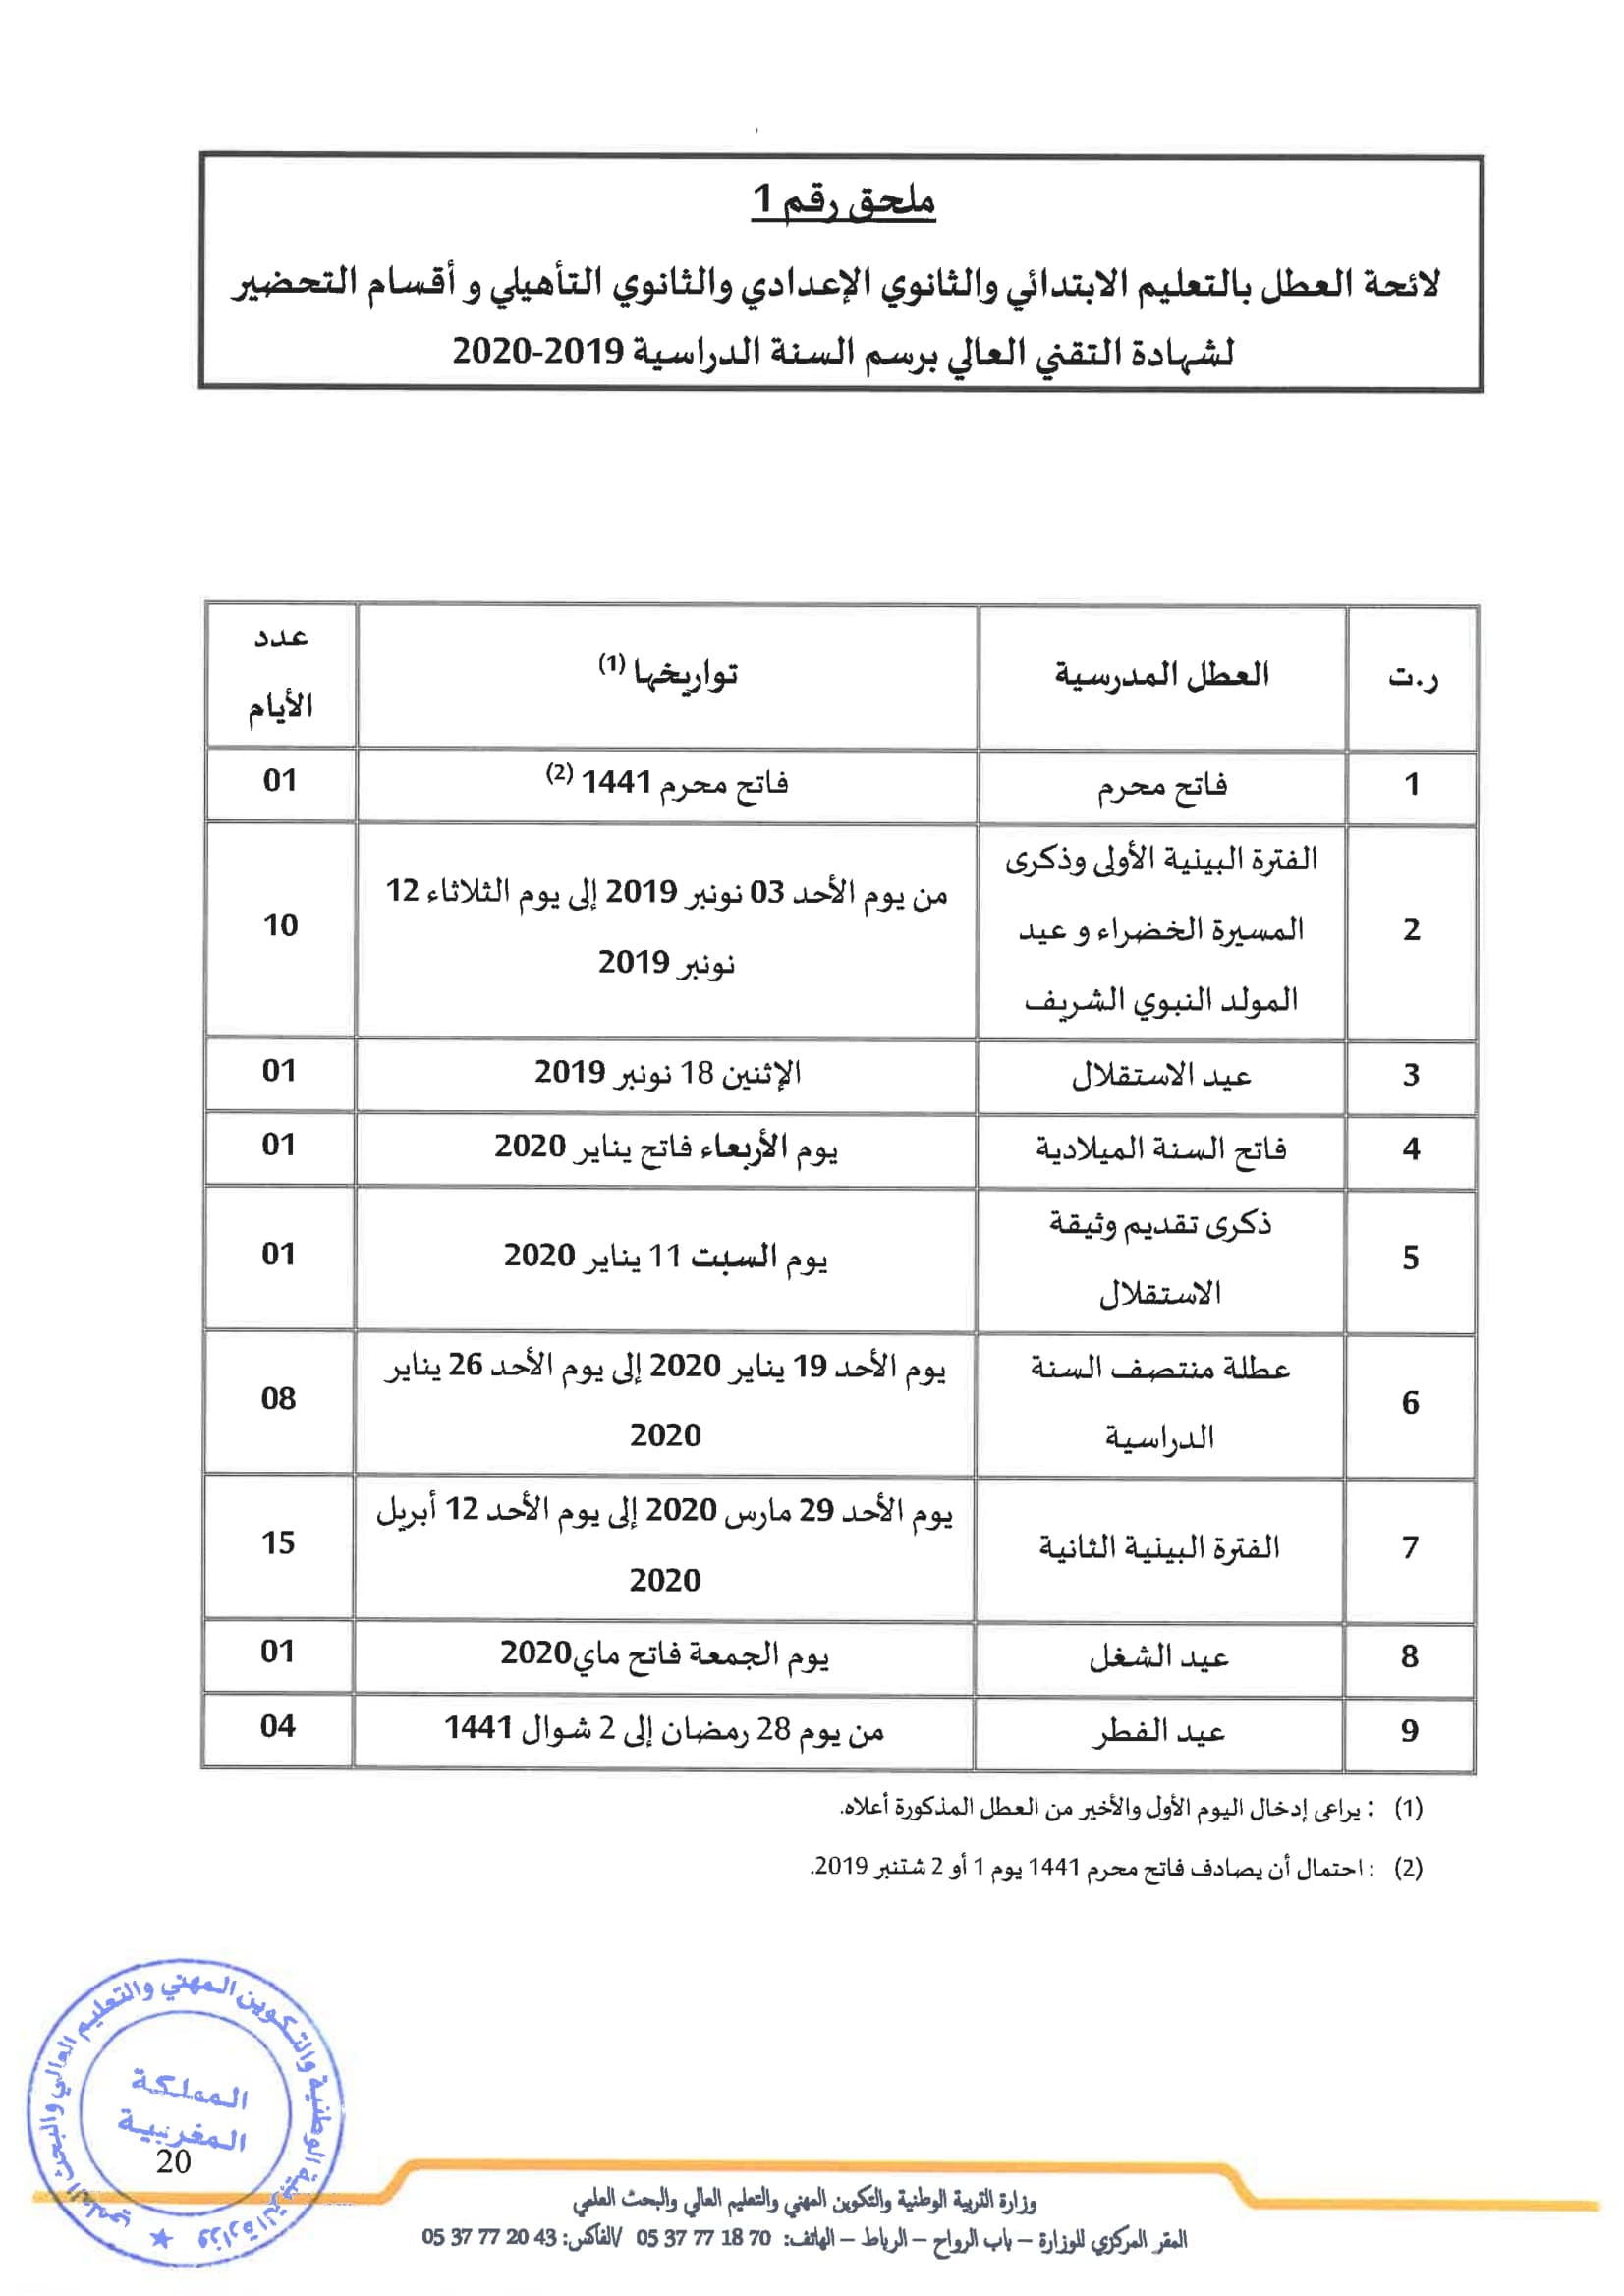 رزنامة جدول العطل المدرسية بالمغرب 2020/2019